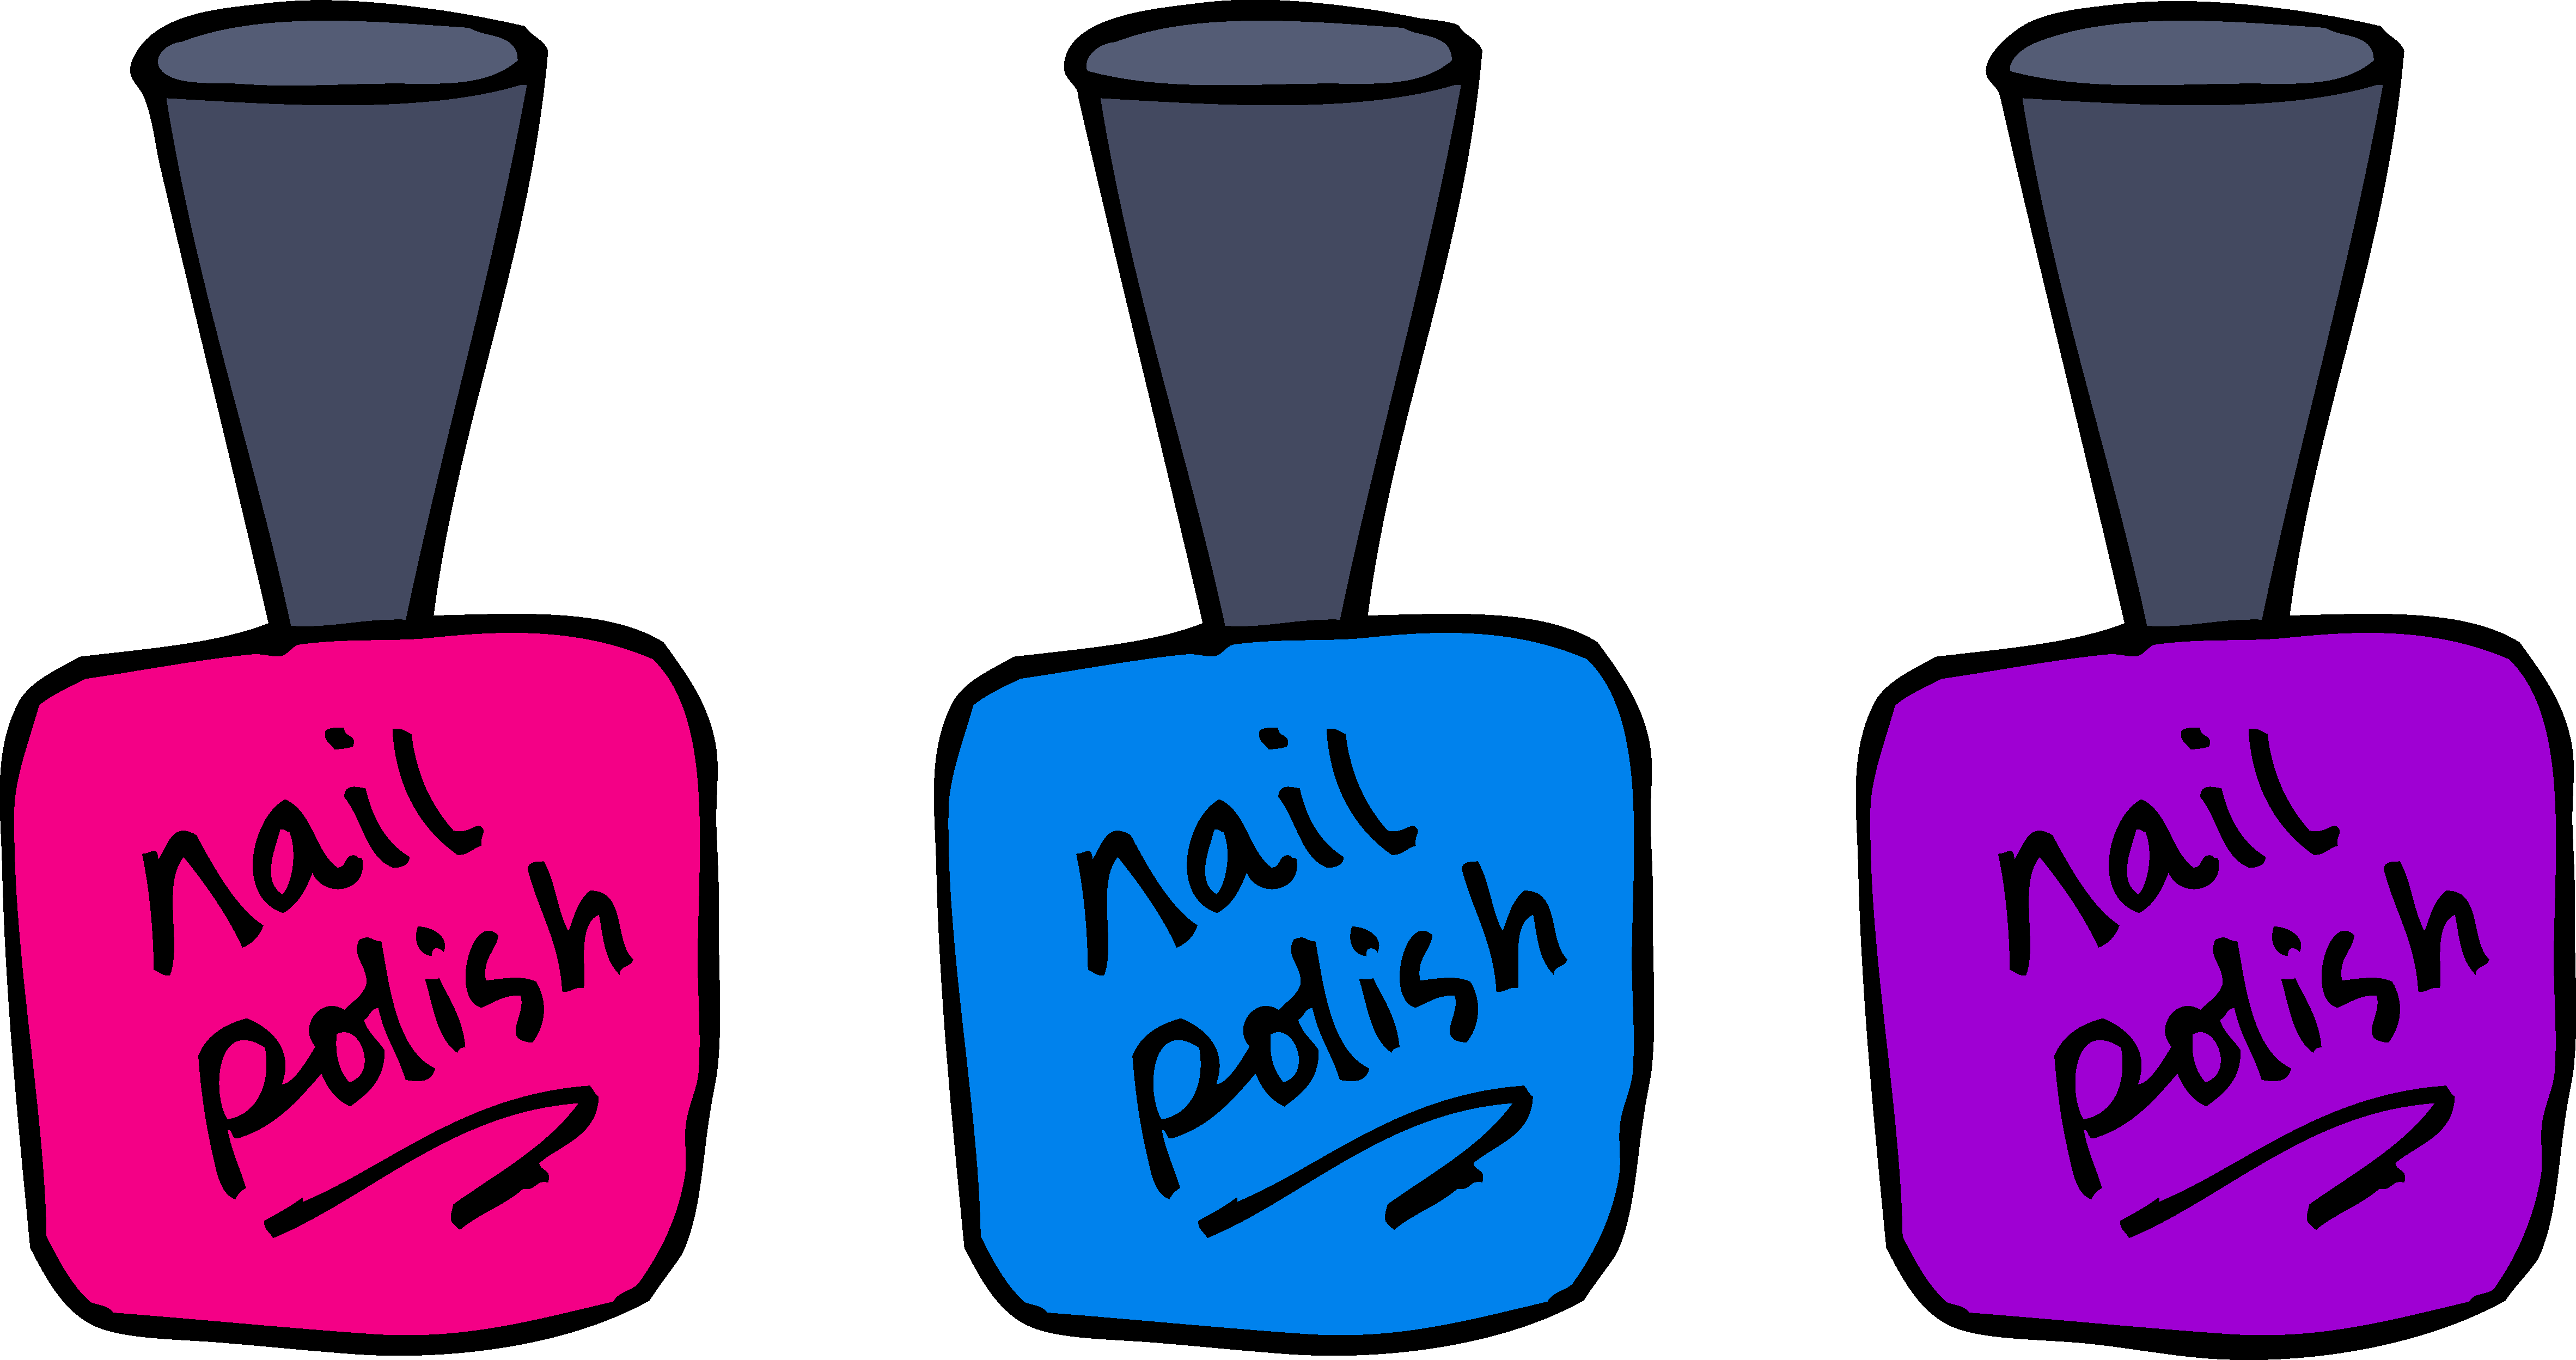 nail art with transparent nail polish